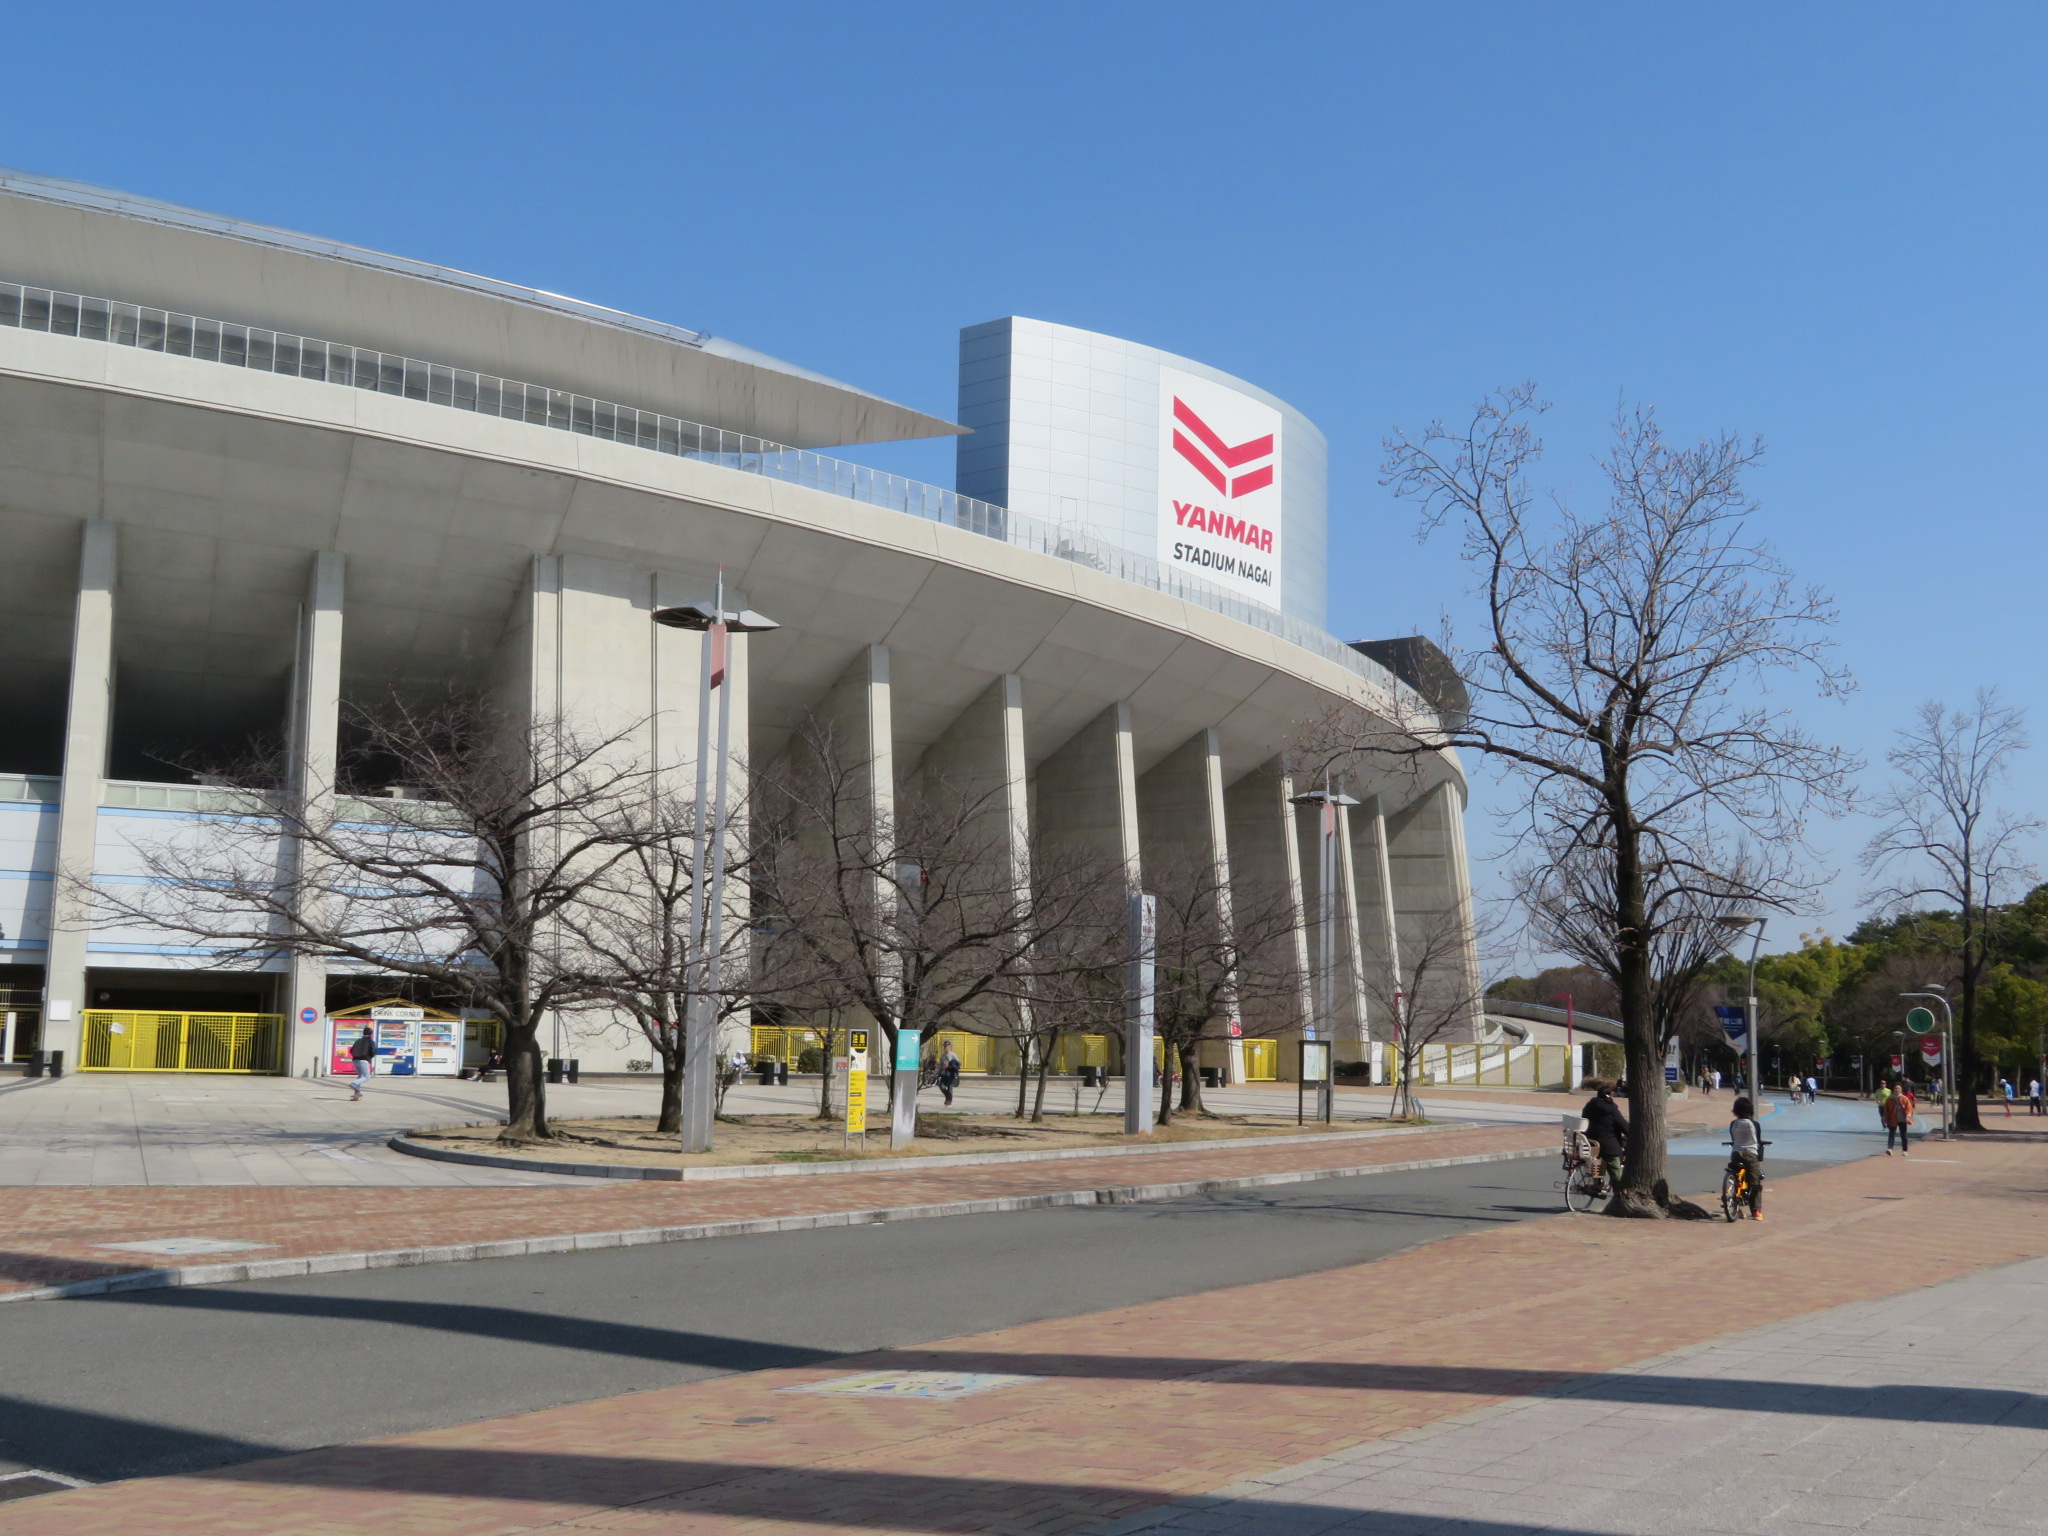 その長居公園の中には、「ヤンマーフィールド長居」という大きな競技場があり、サッカーJリーグのセレッソ大阪のホームスタジアムでもあります。